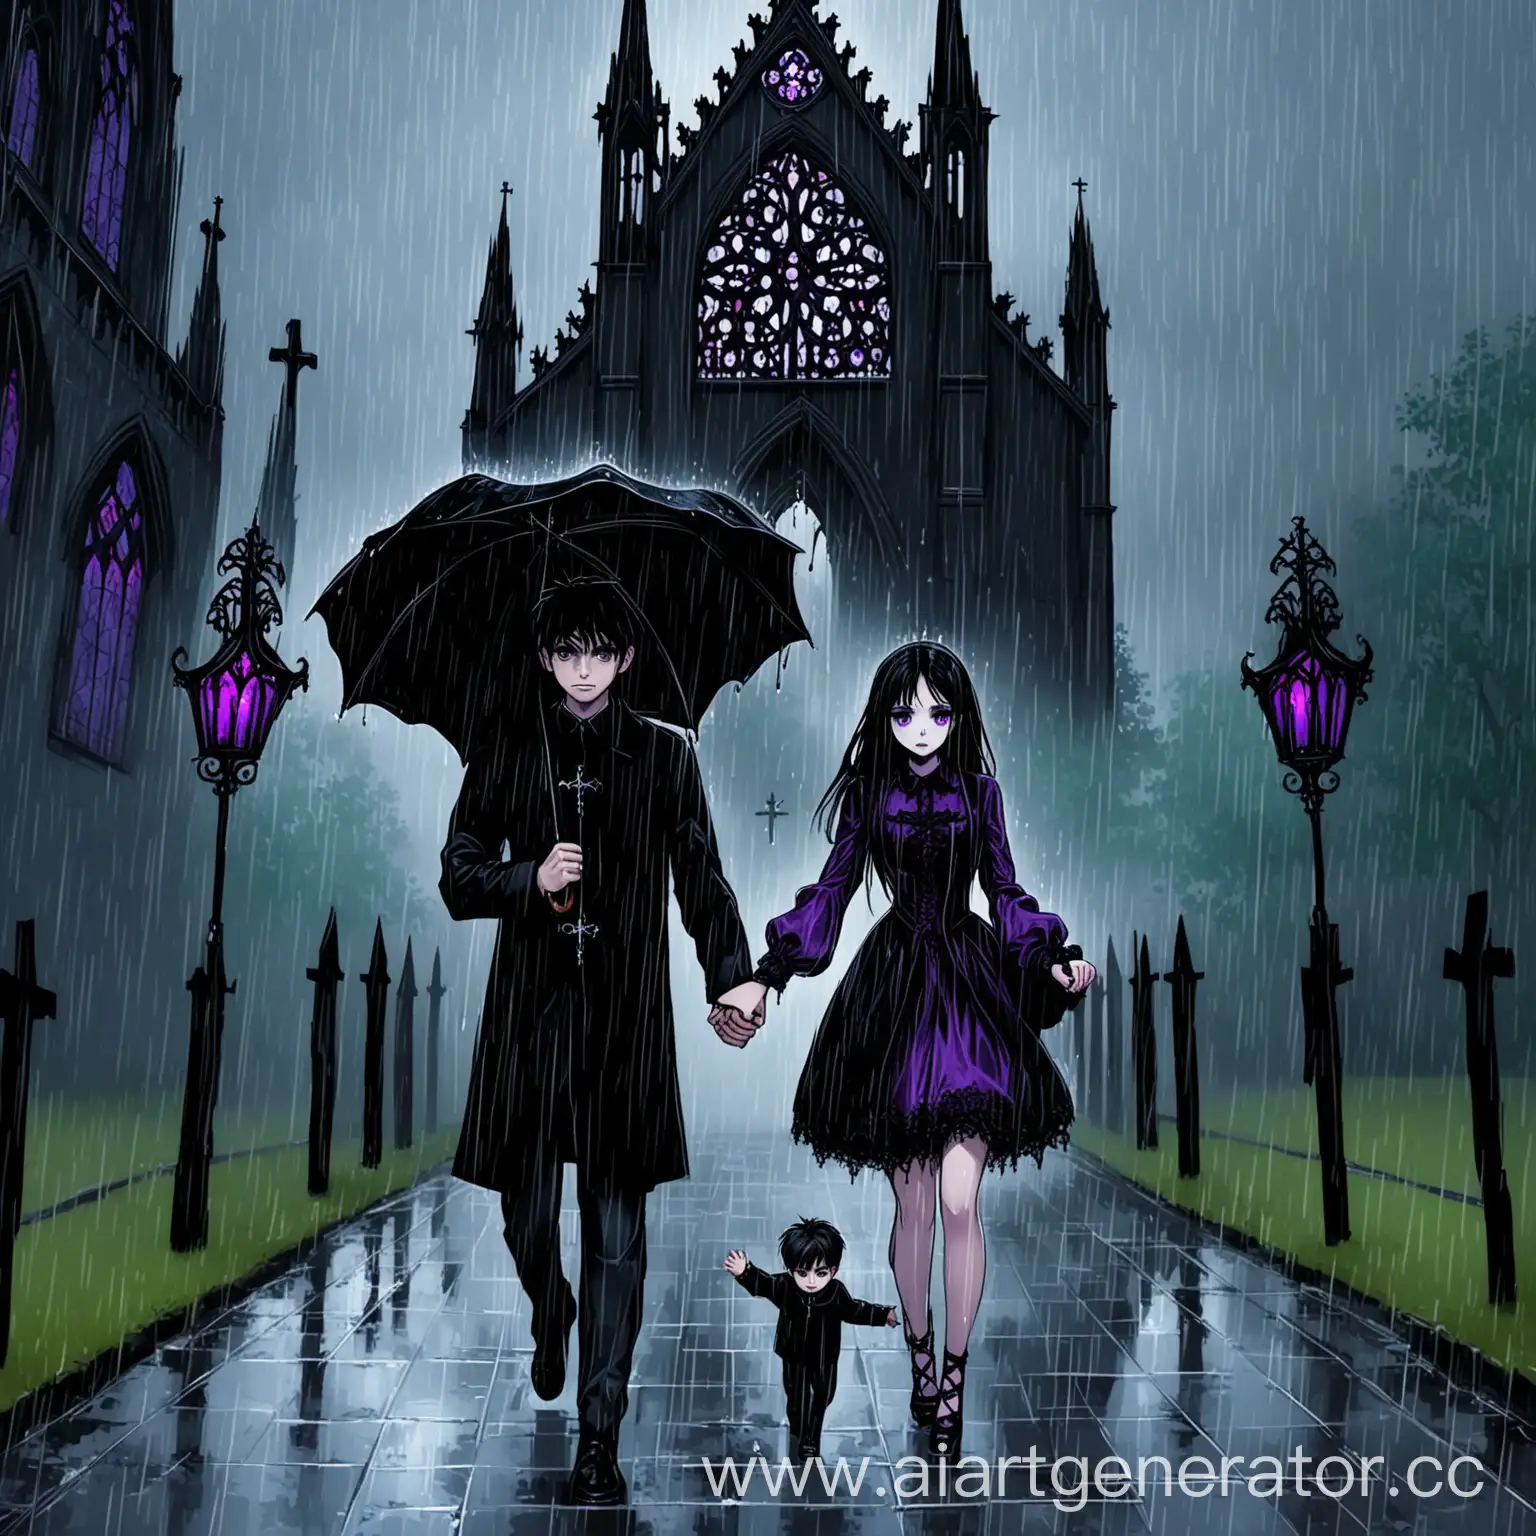 Темноволосая девушка с фиолетовыми глазами и парень идут к готической часовне в дождь